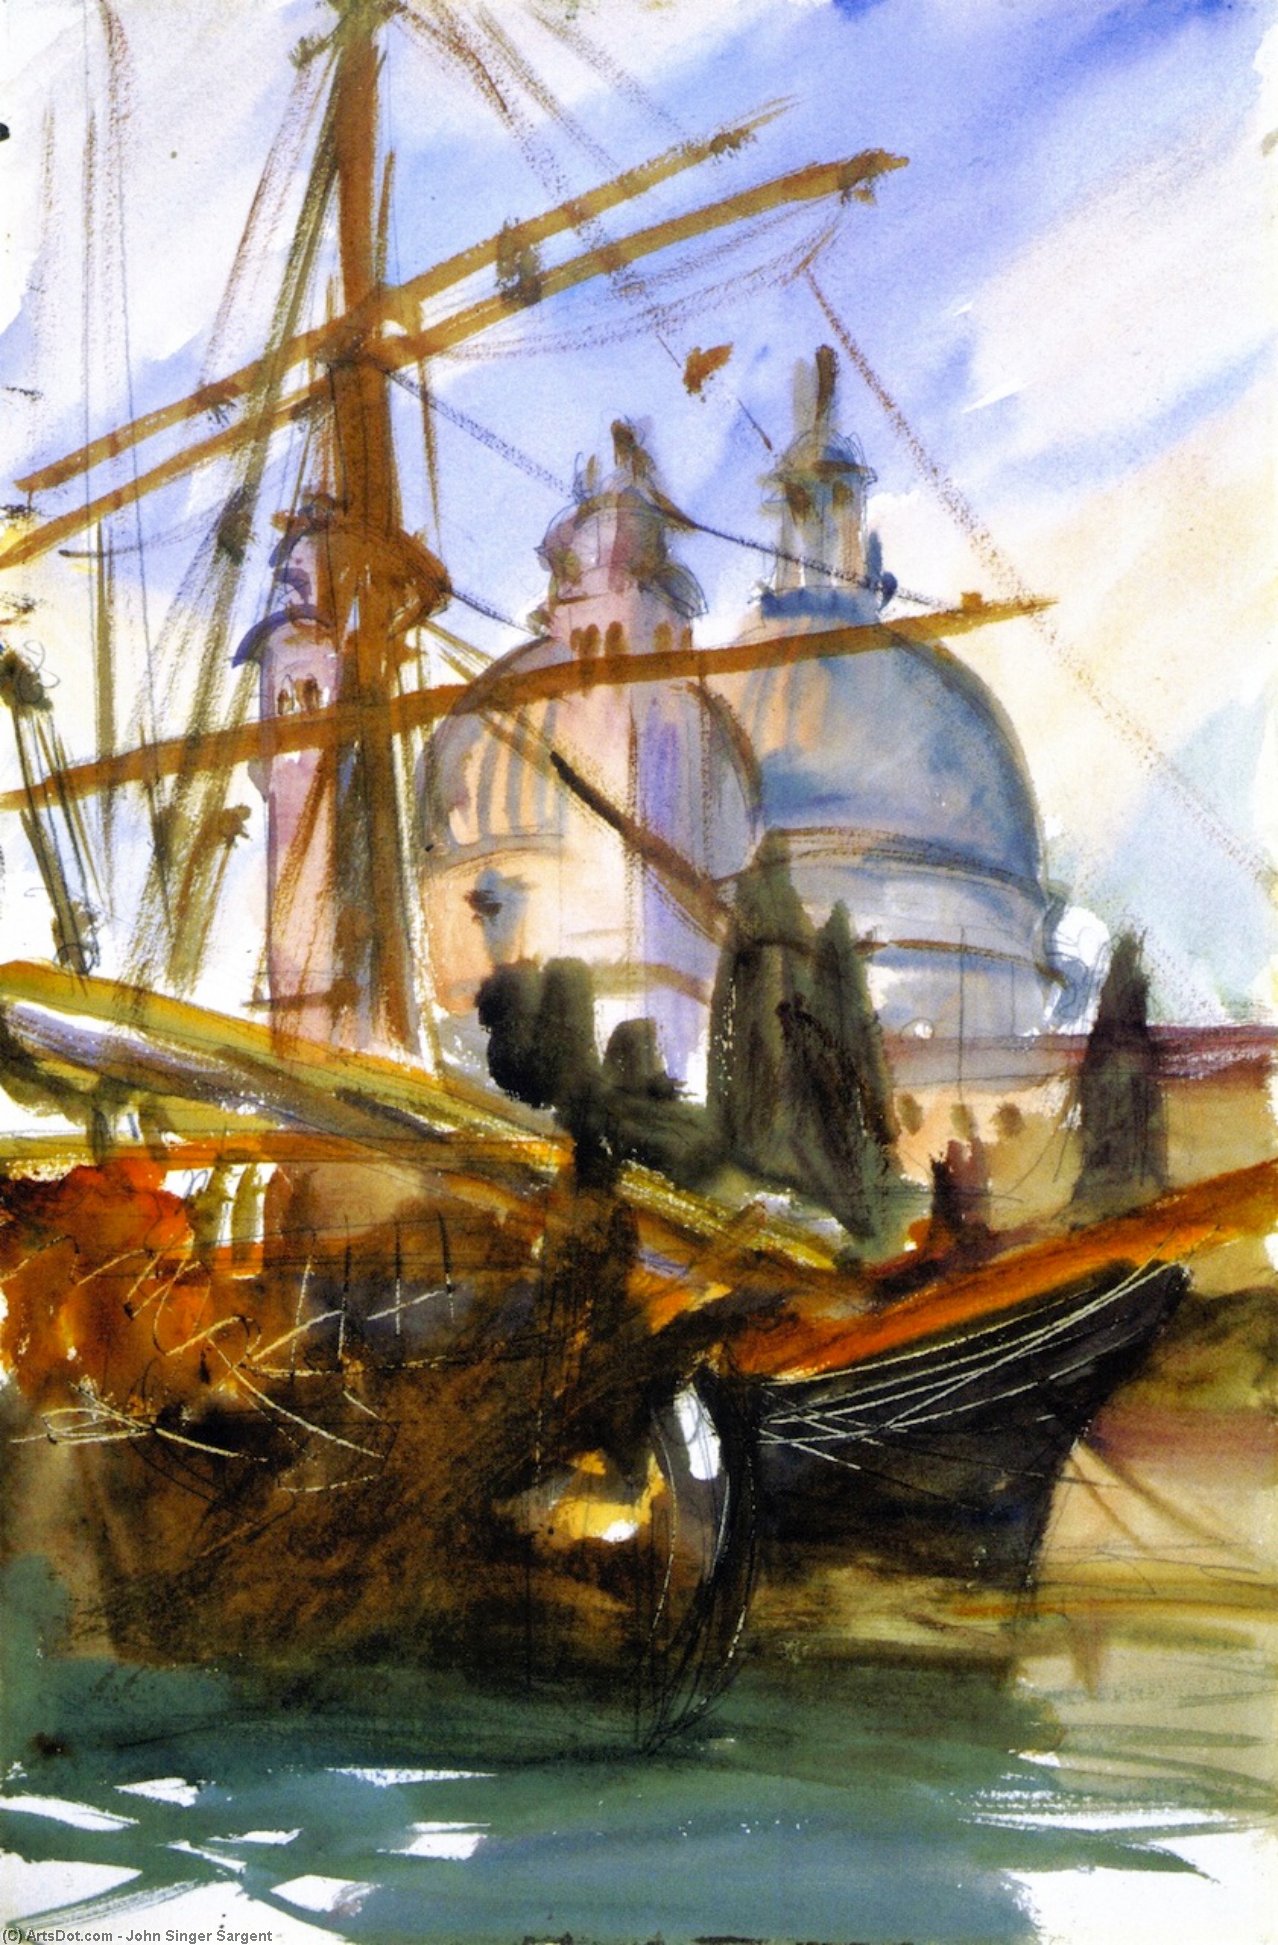 Wikioo.org - Bách khoa toàn thư về mỹ thuật - Vẽ tranh, Tác phẩm nghệ thuật John Singer Sargent - Santa Maria della Salute, Venice